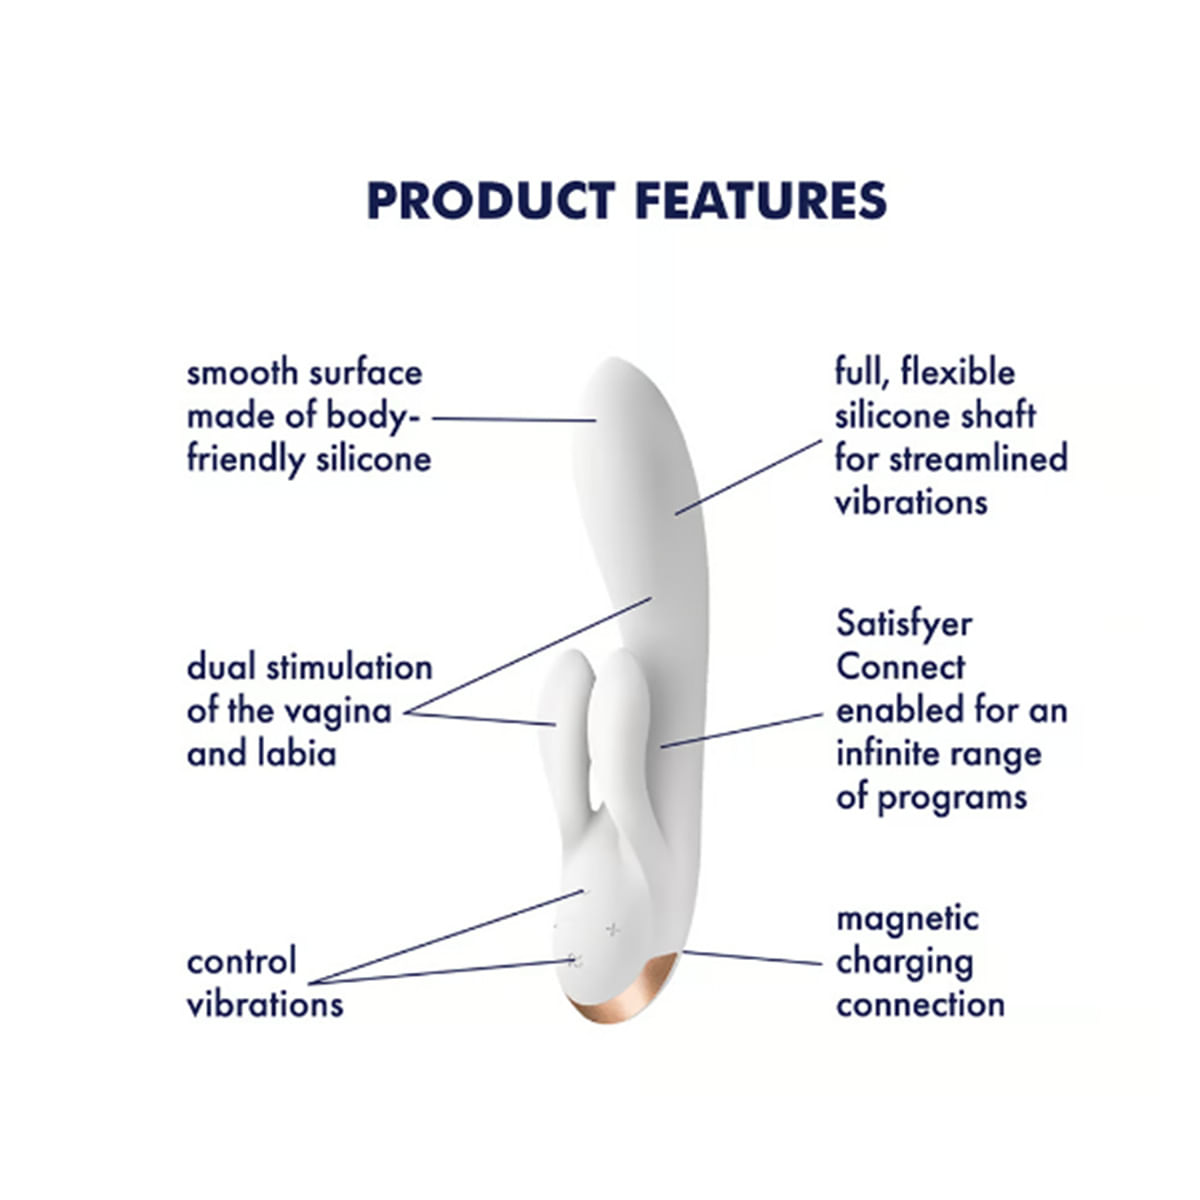 Satisfyer Double Flex Connect App Vibrador Ponto G com Estimulador de Clitoris